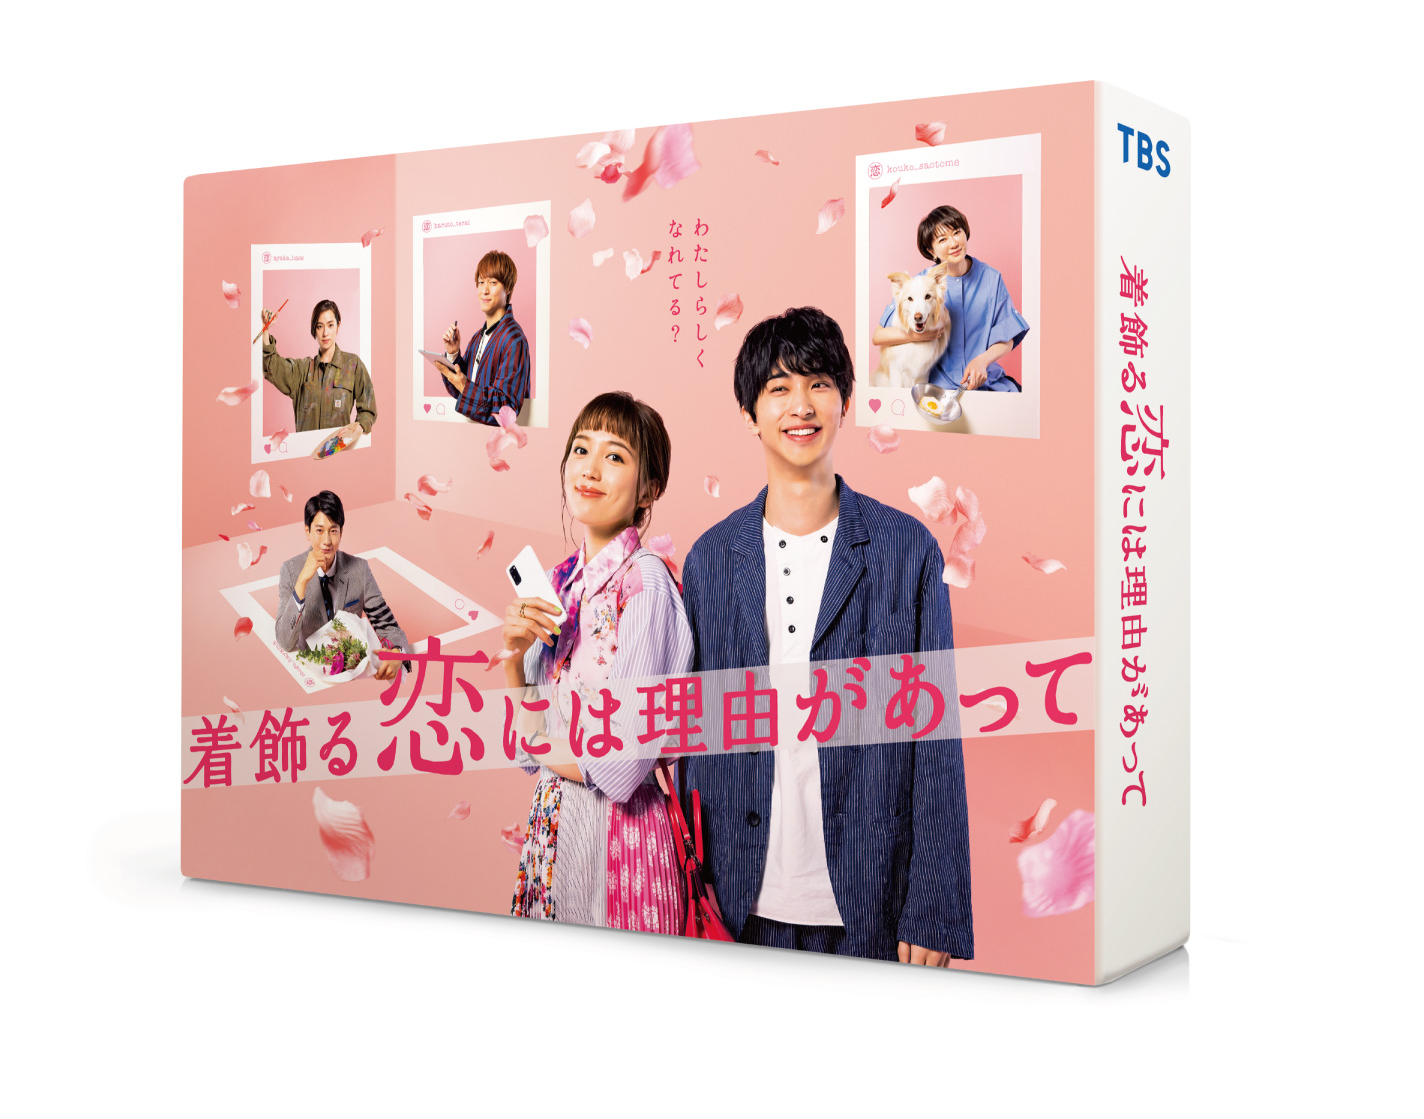 楽天ブックス: 着飾る恋には理由があって Blu-ray BOX【Blu-ray 